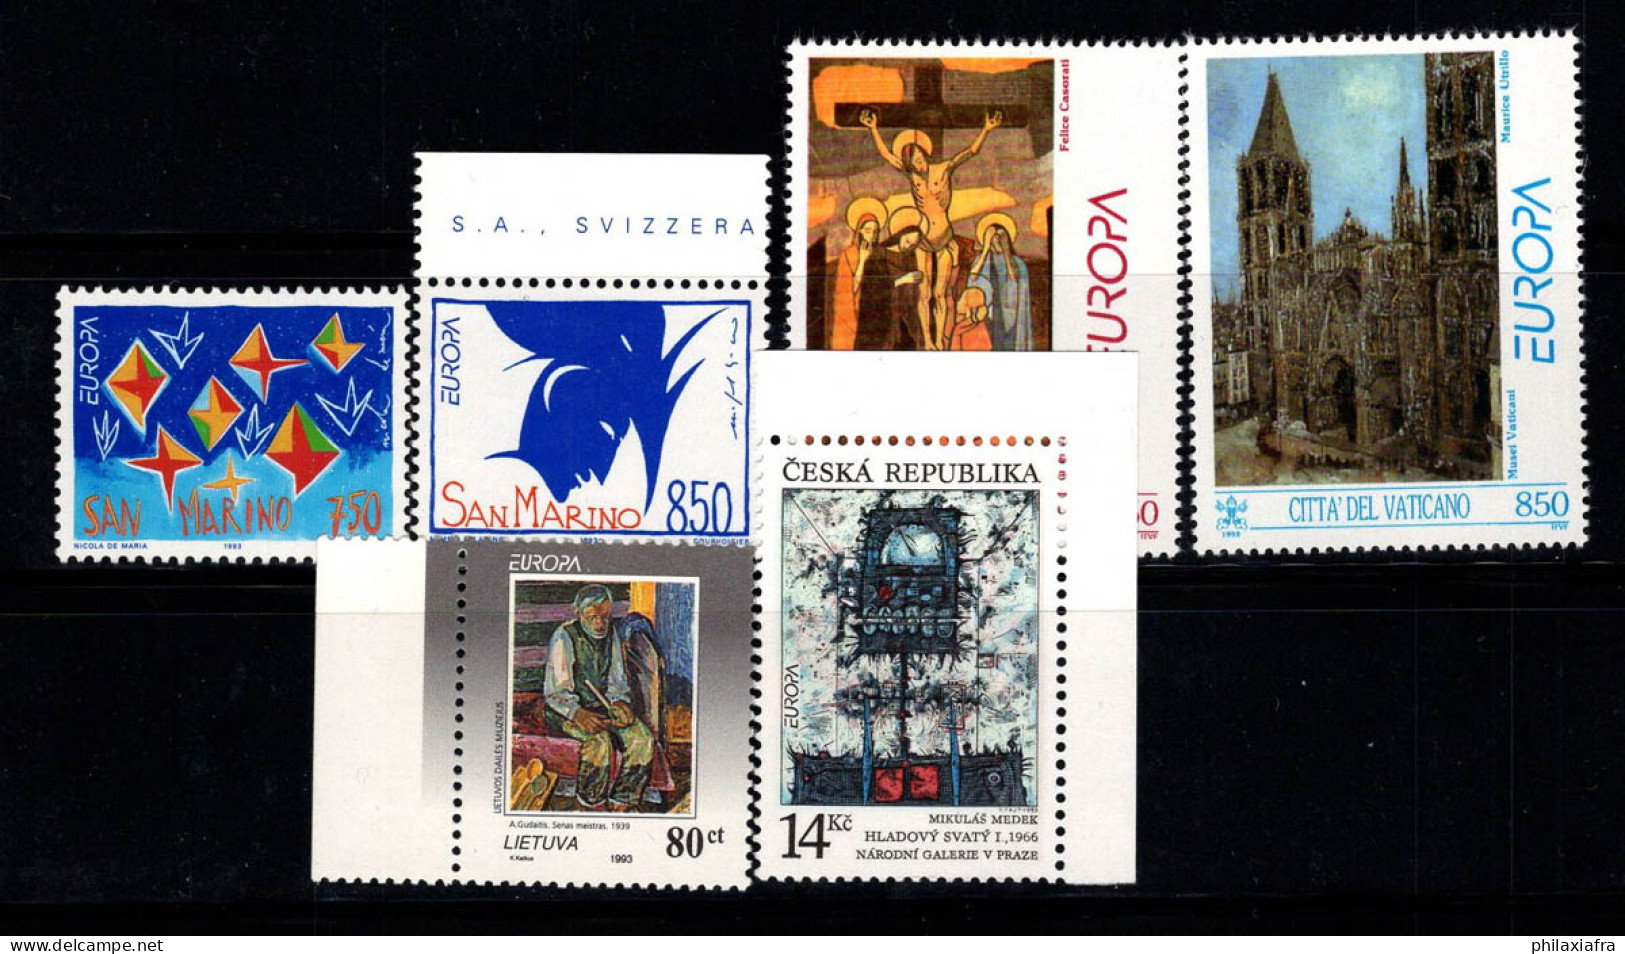 Europe 1993 Neuf ** 100% CEPT, République Tchèque, Vatican, Saint-Marin - 1993